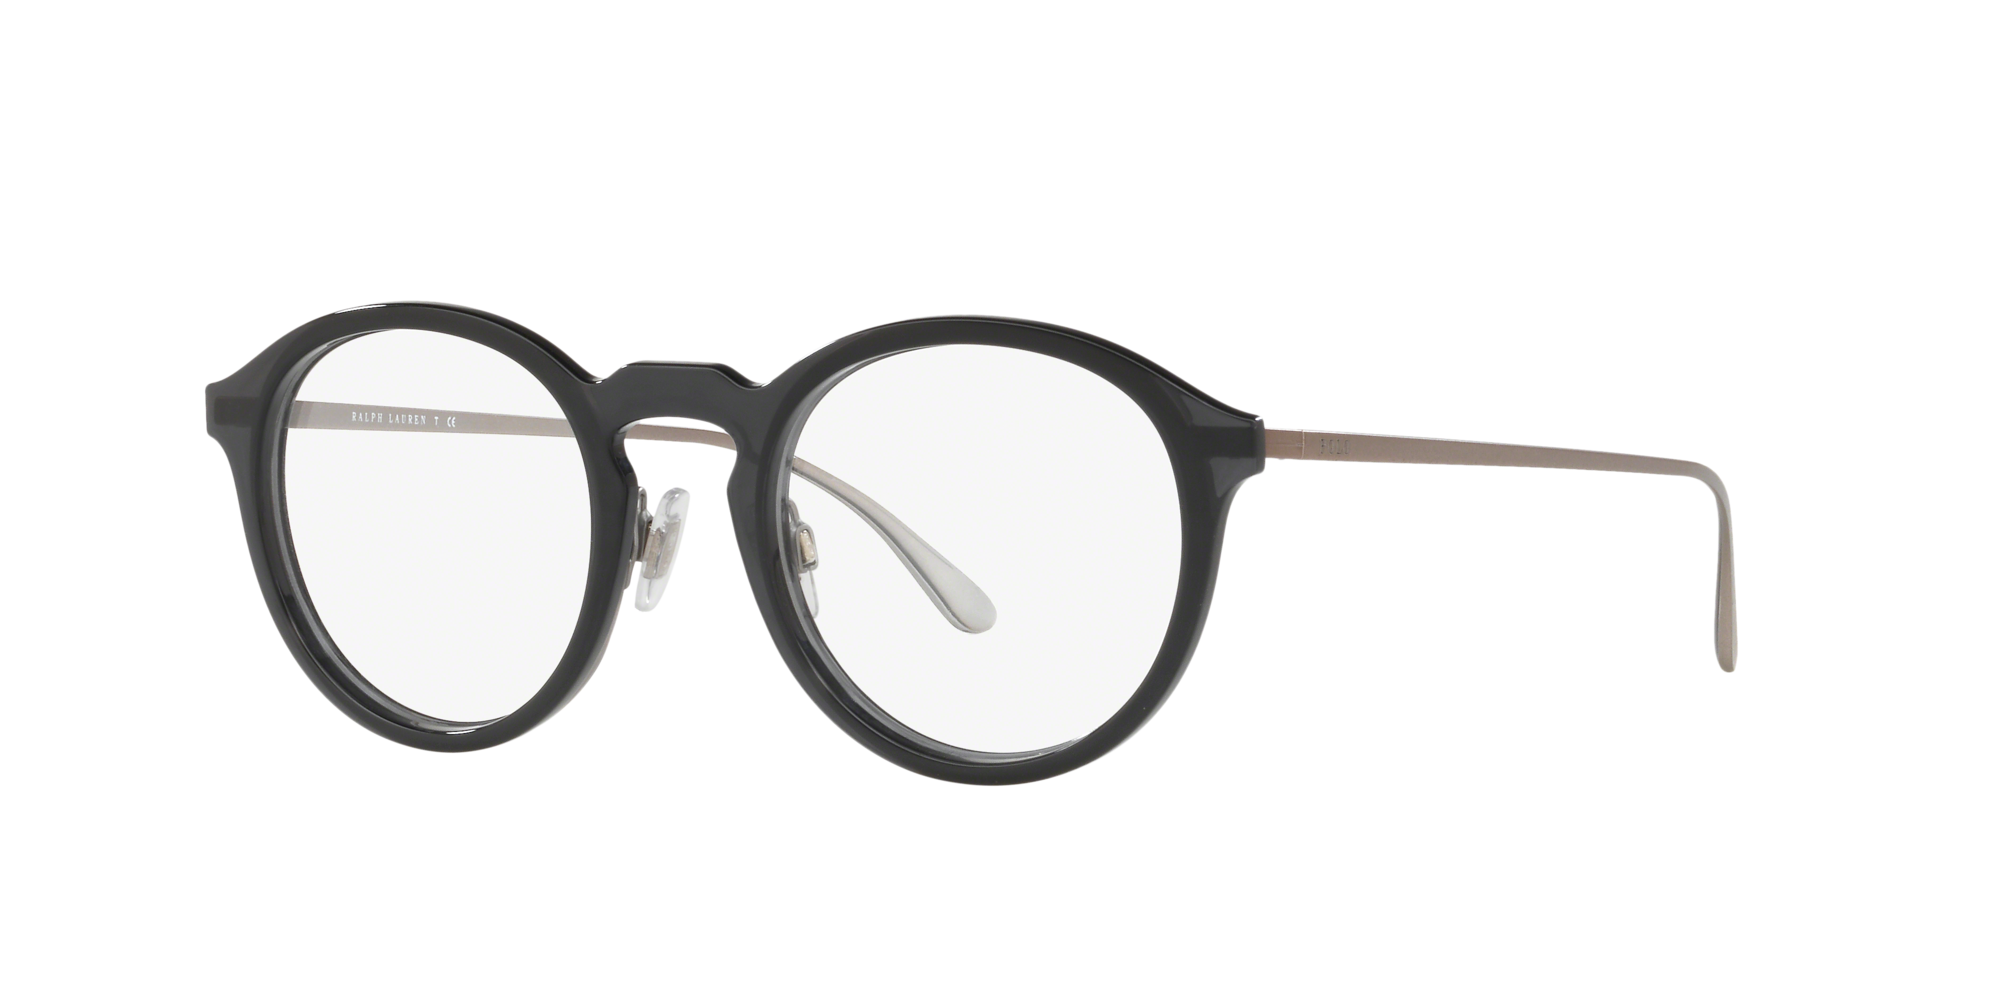 polo ralph lauren eyeglasses